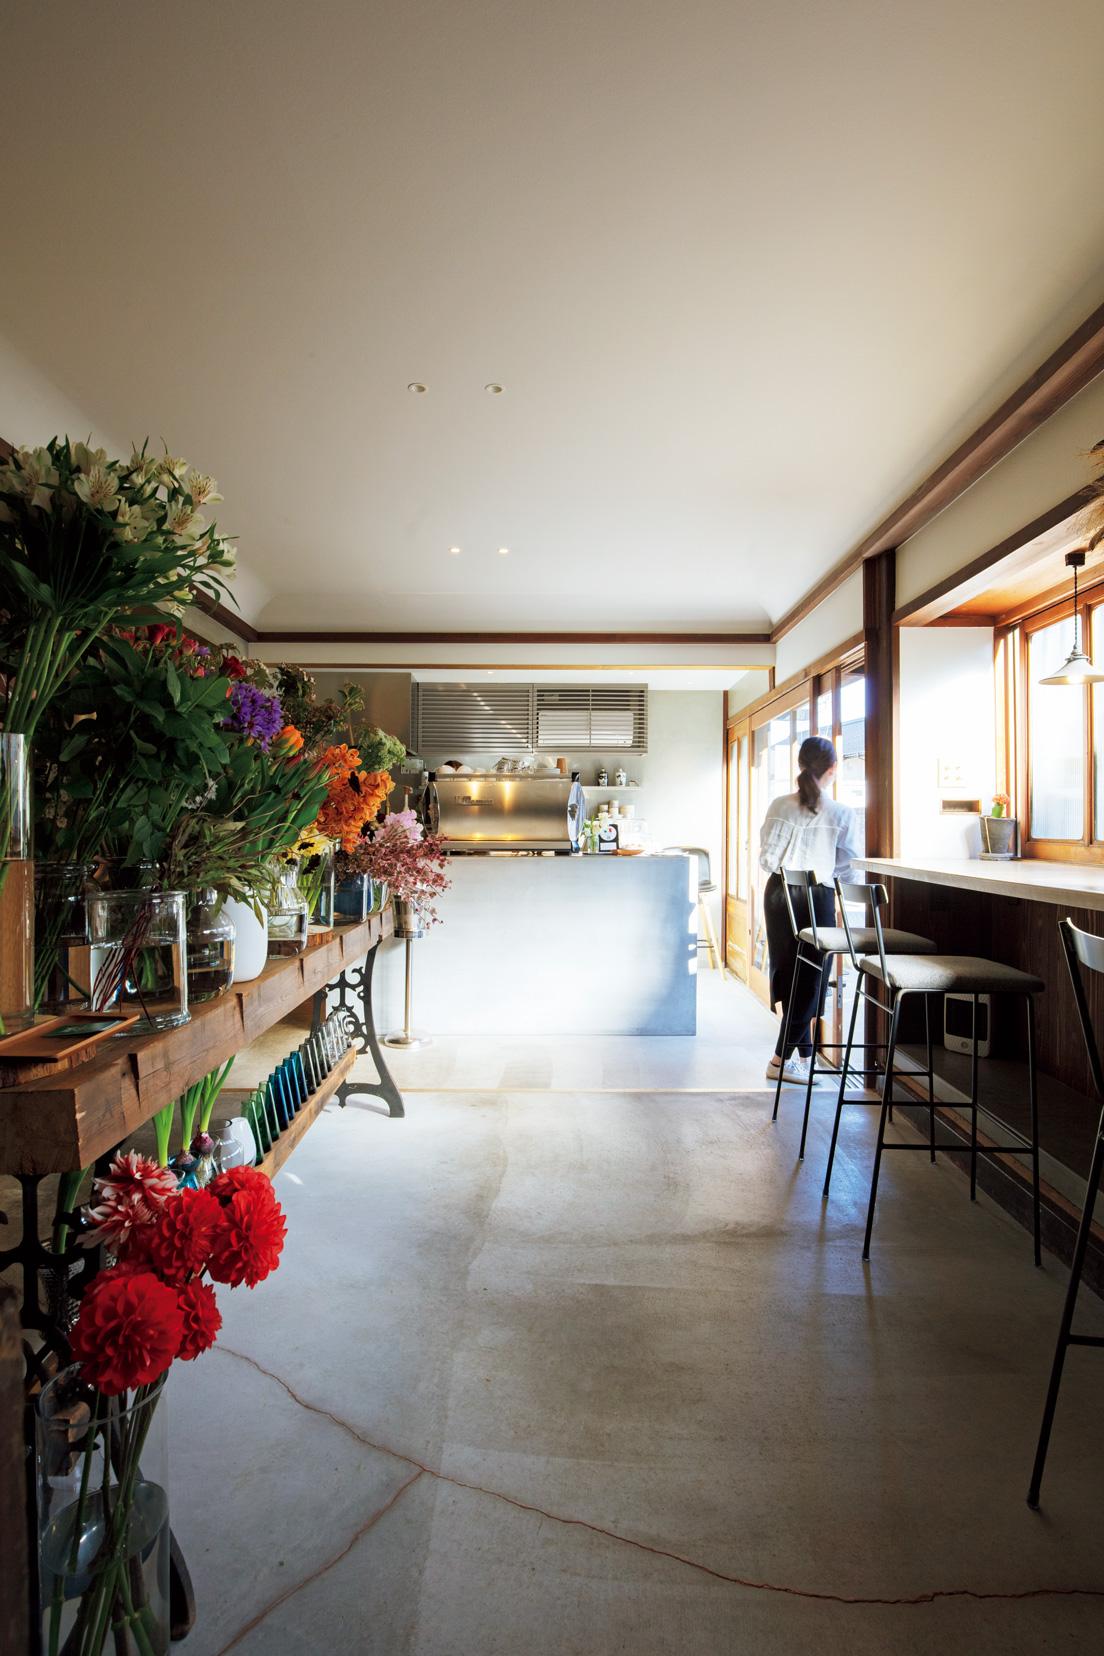 1階にあるカフェ〈Angolo CAFFE〉と花屋の〈hibou〉。可憐に咲く花々に癒される。朝食はカフェで、夕食はイタリアンで供される。